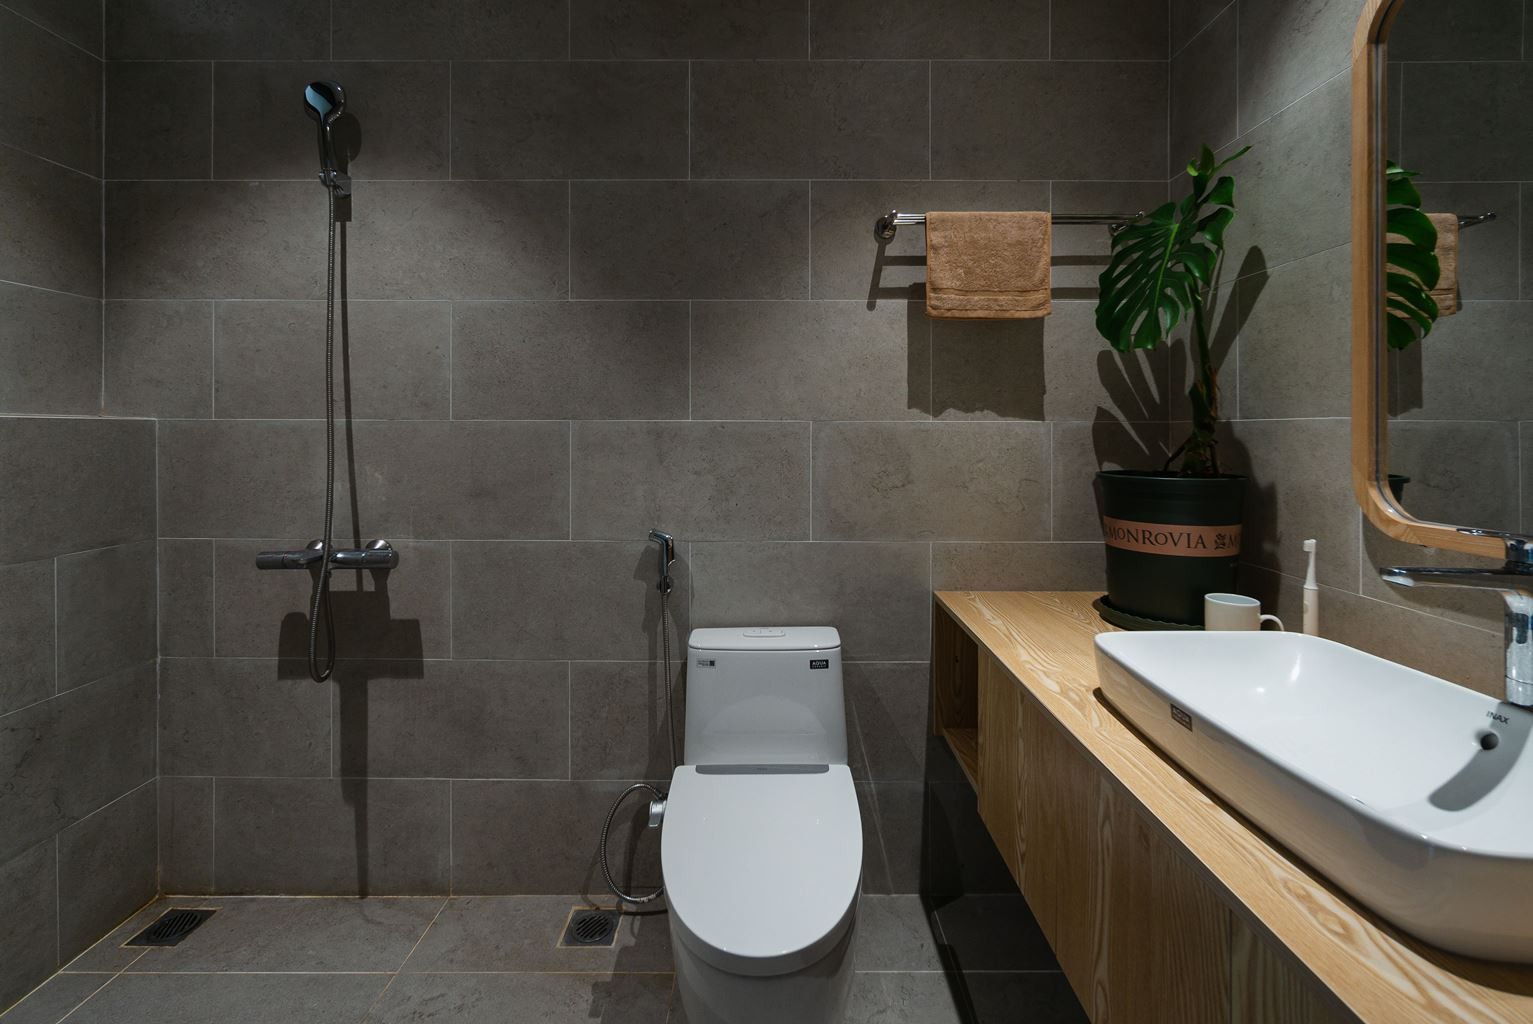 Khu vực vệ sinh được sử dụng gạch ốp màu xám, kết hợp tủ gỗ.